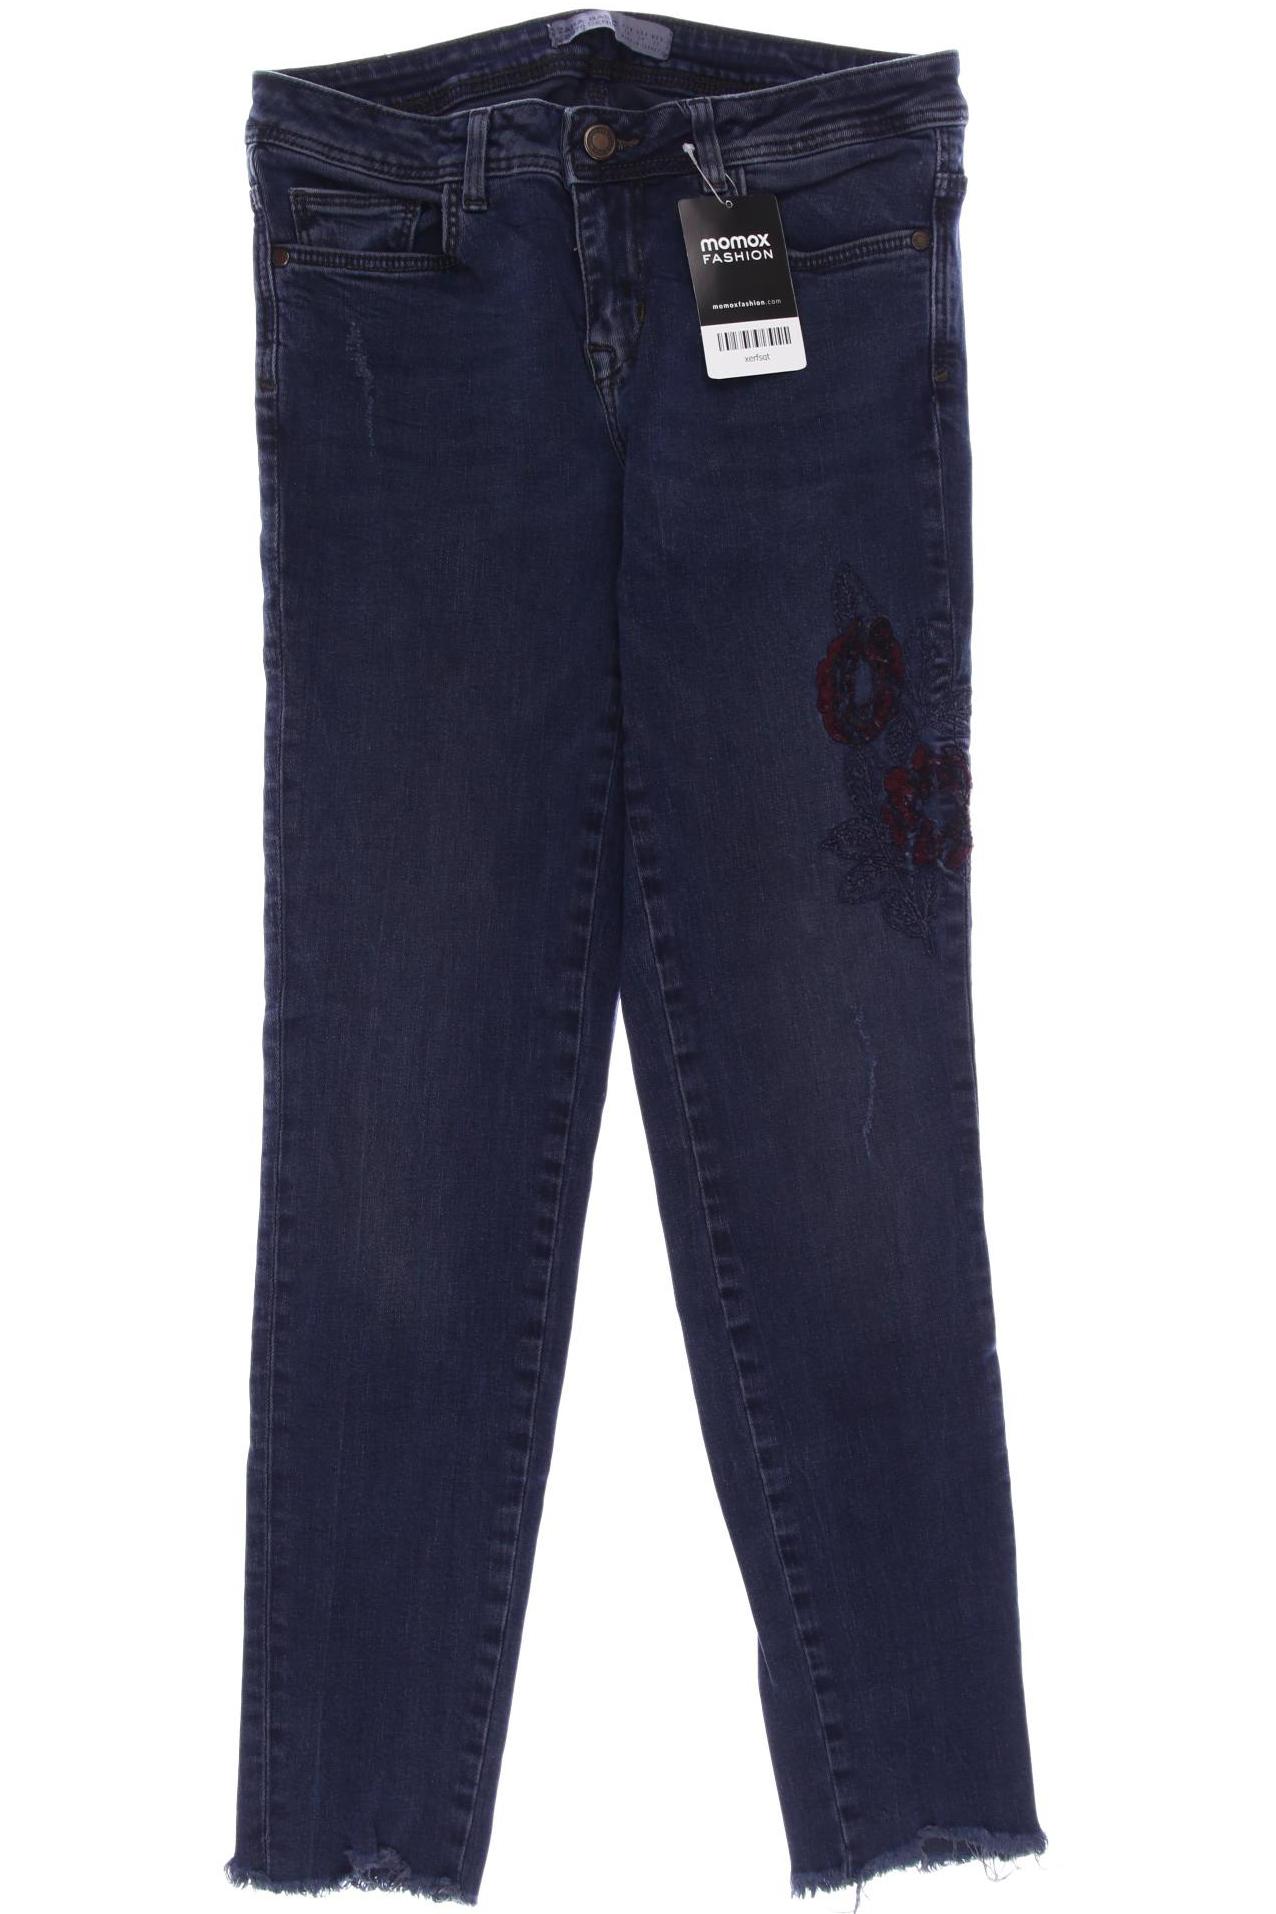 ZARA Damen Jeans, marineblau von ZARA